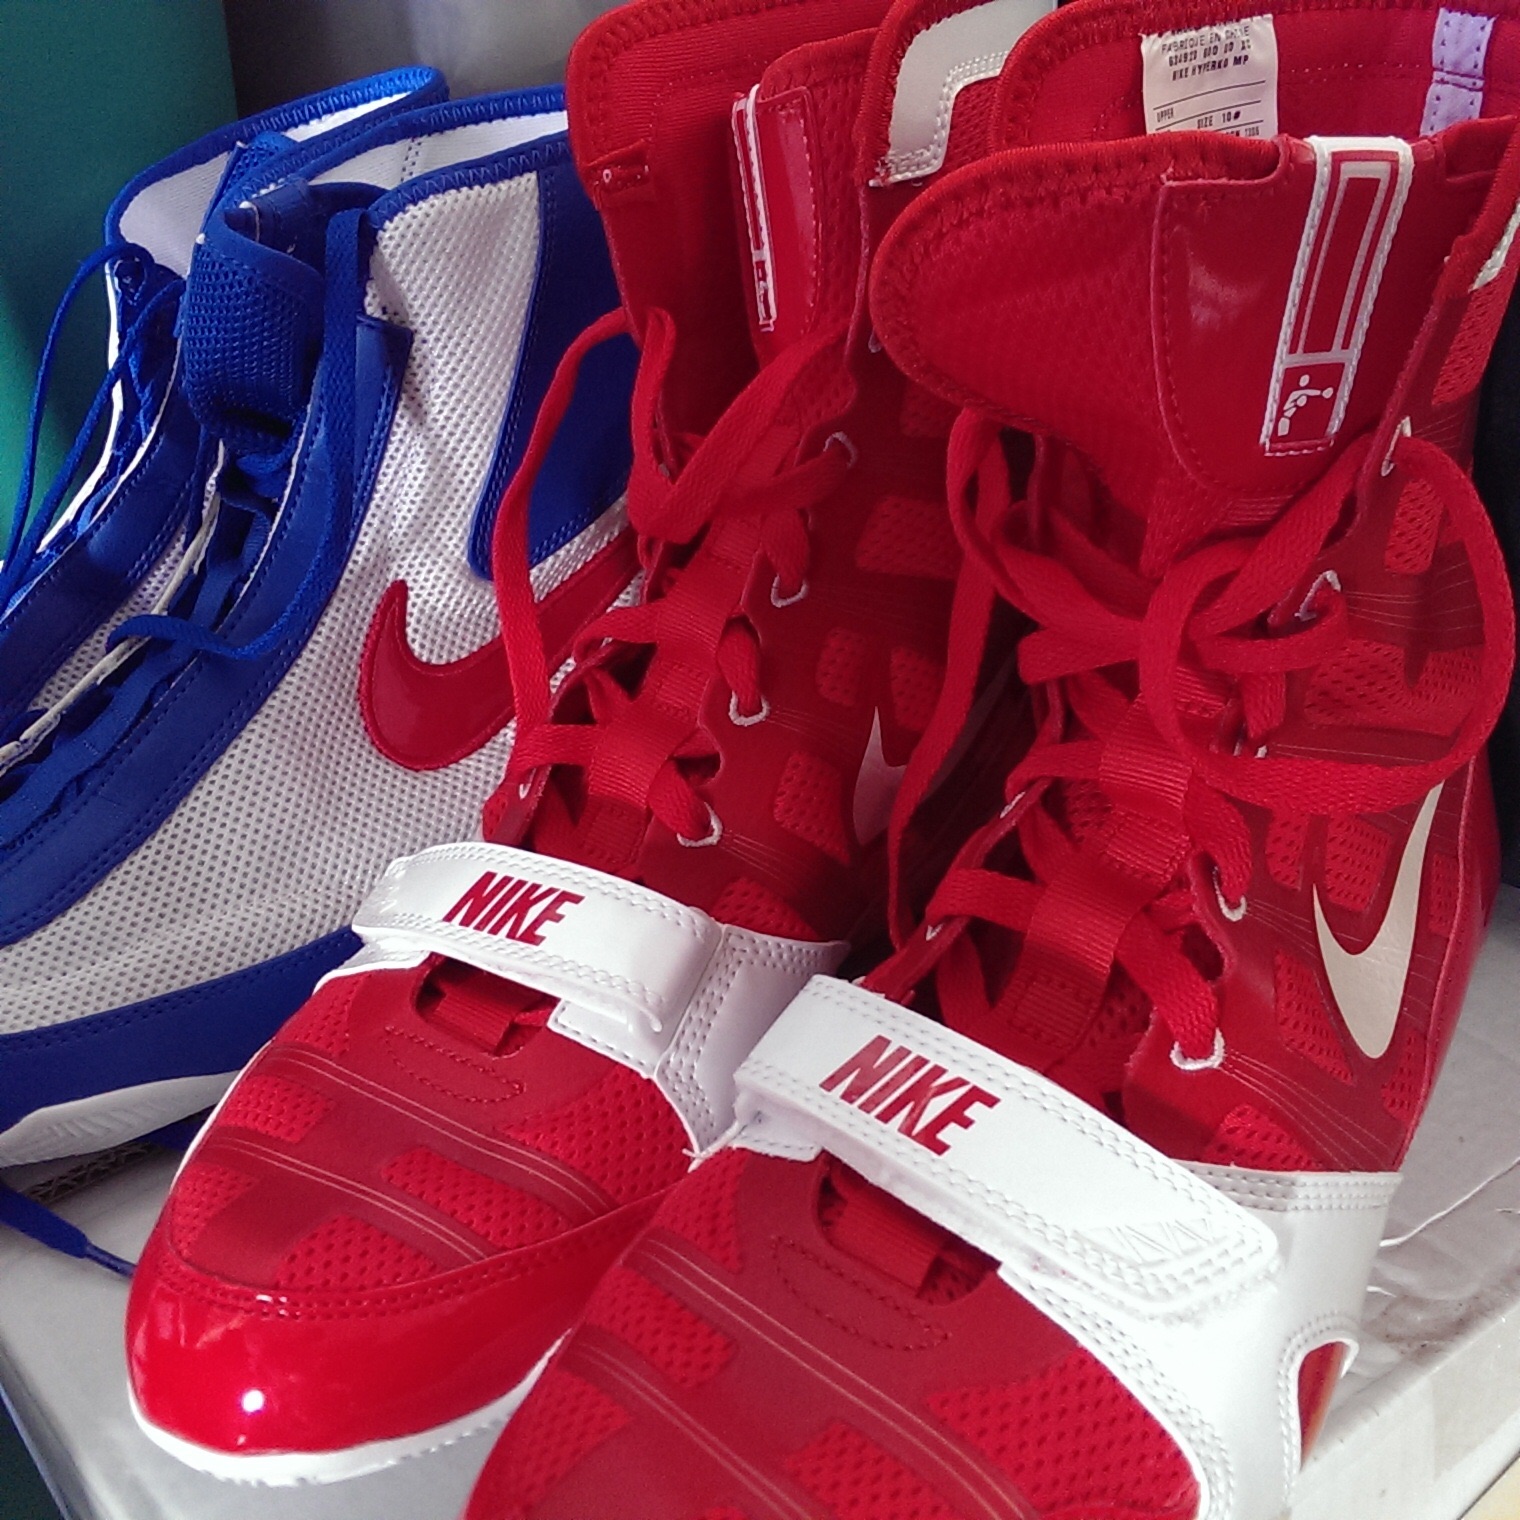 Boxing Shoes Nike HyperKO and Nike Machomai Athlete